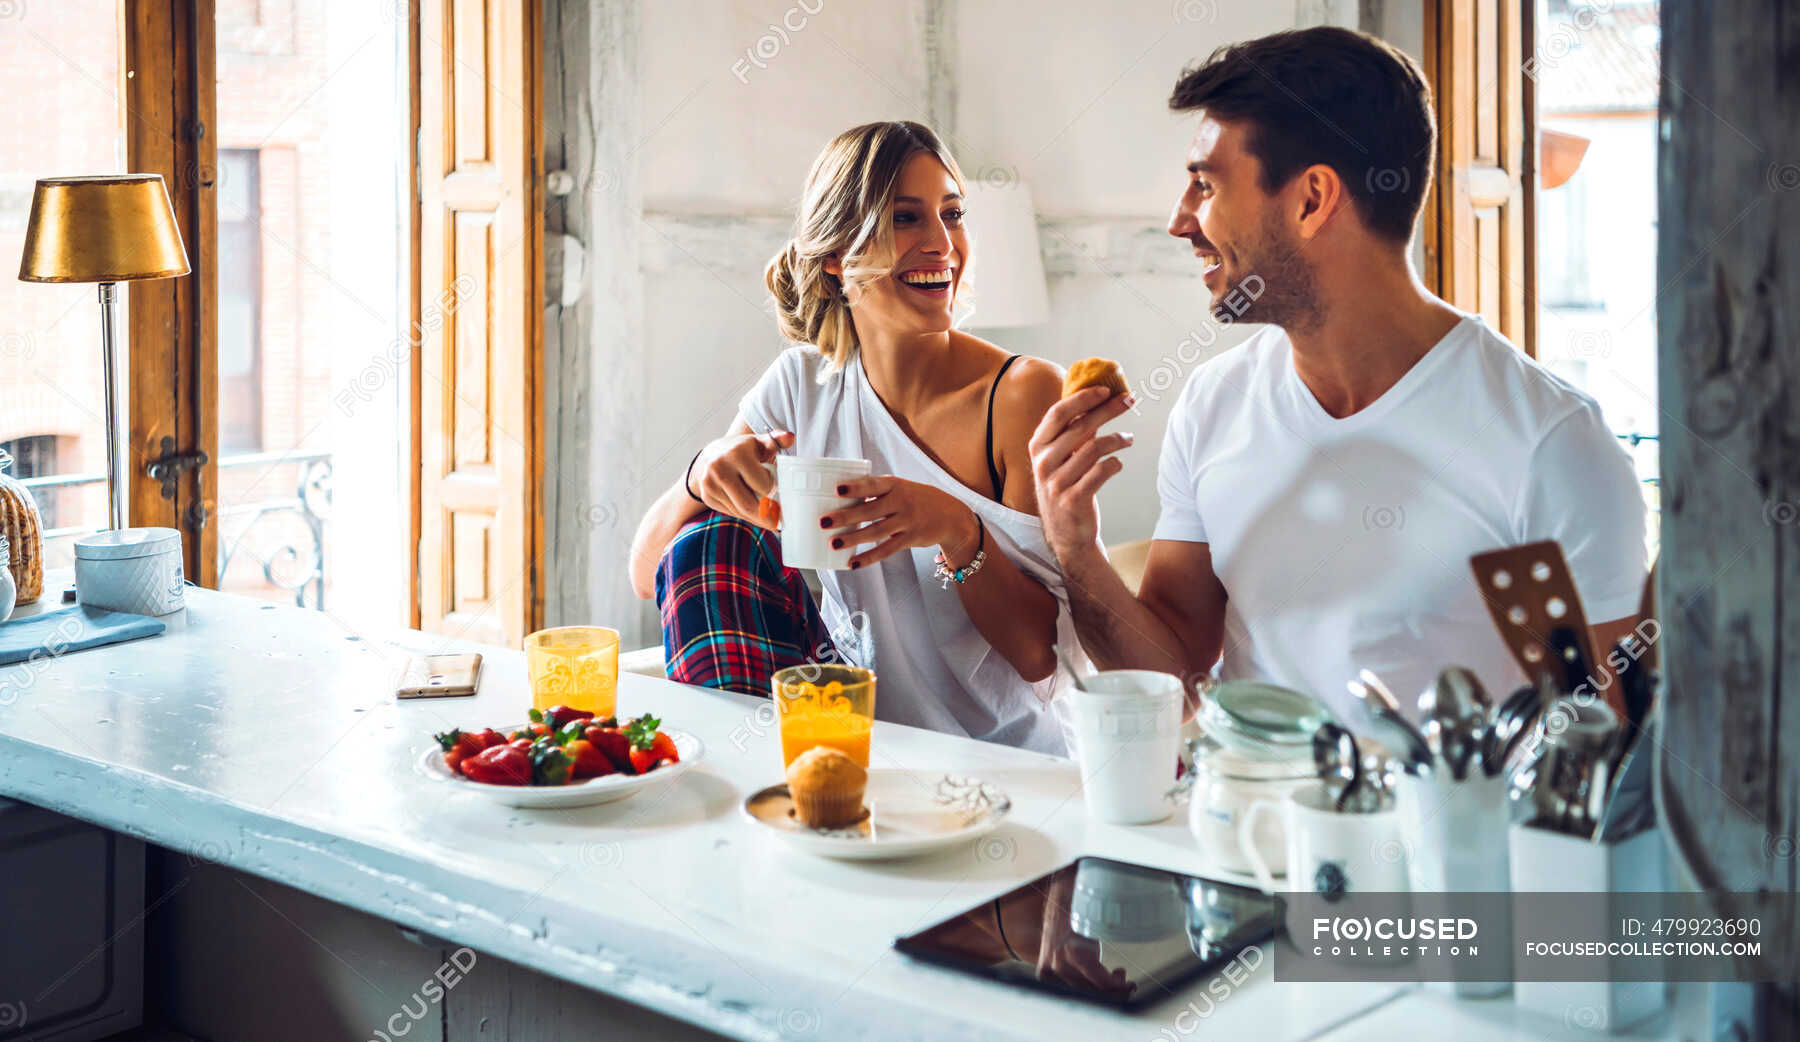 Жена на кухонном столе. Совместный завтрак. Мужчина и женщина завтракают. Завтрак вдвоем. Фотосессия на кухне.